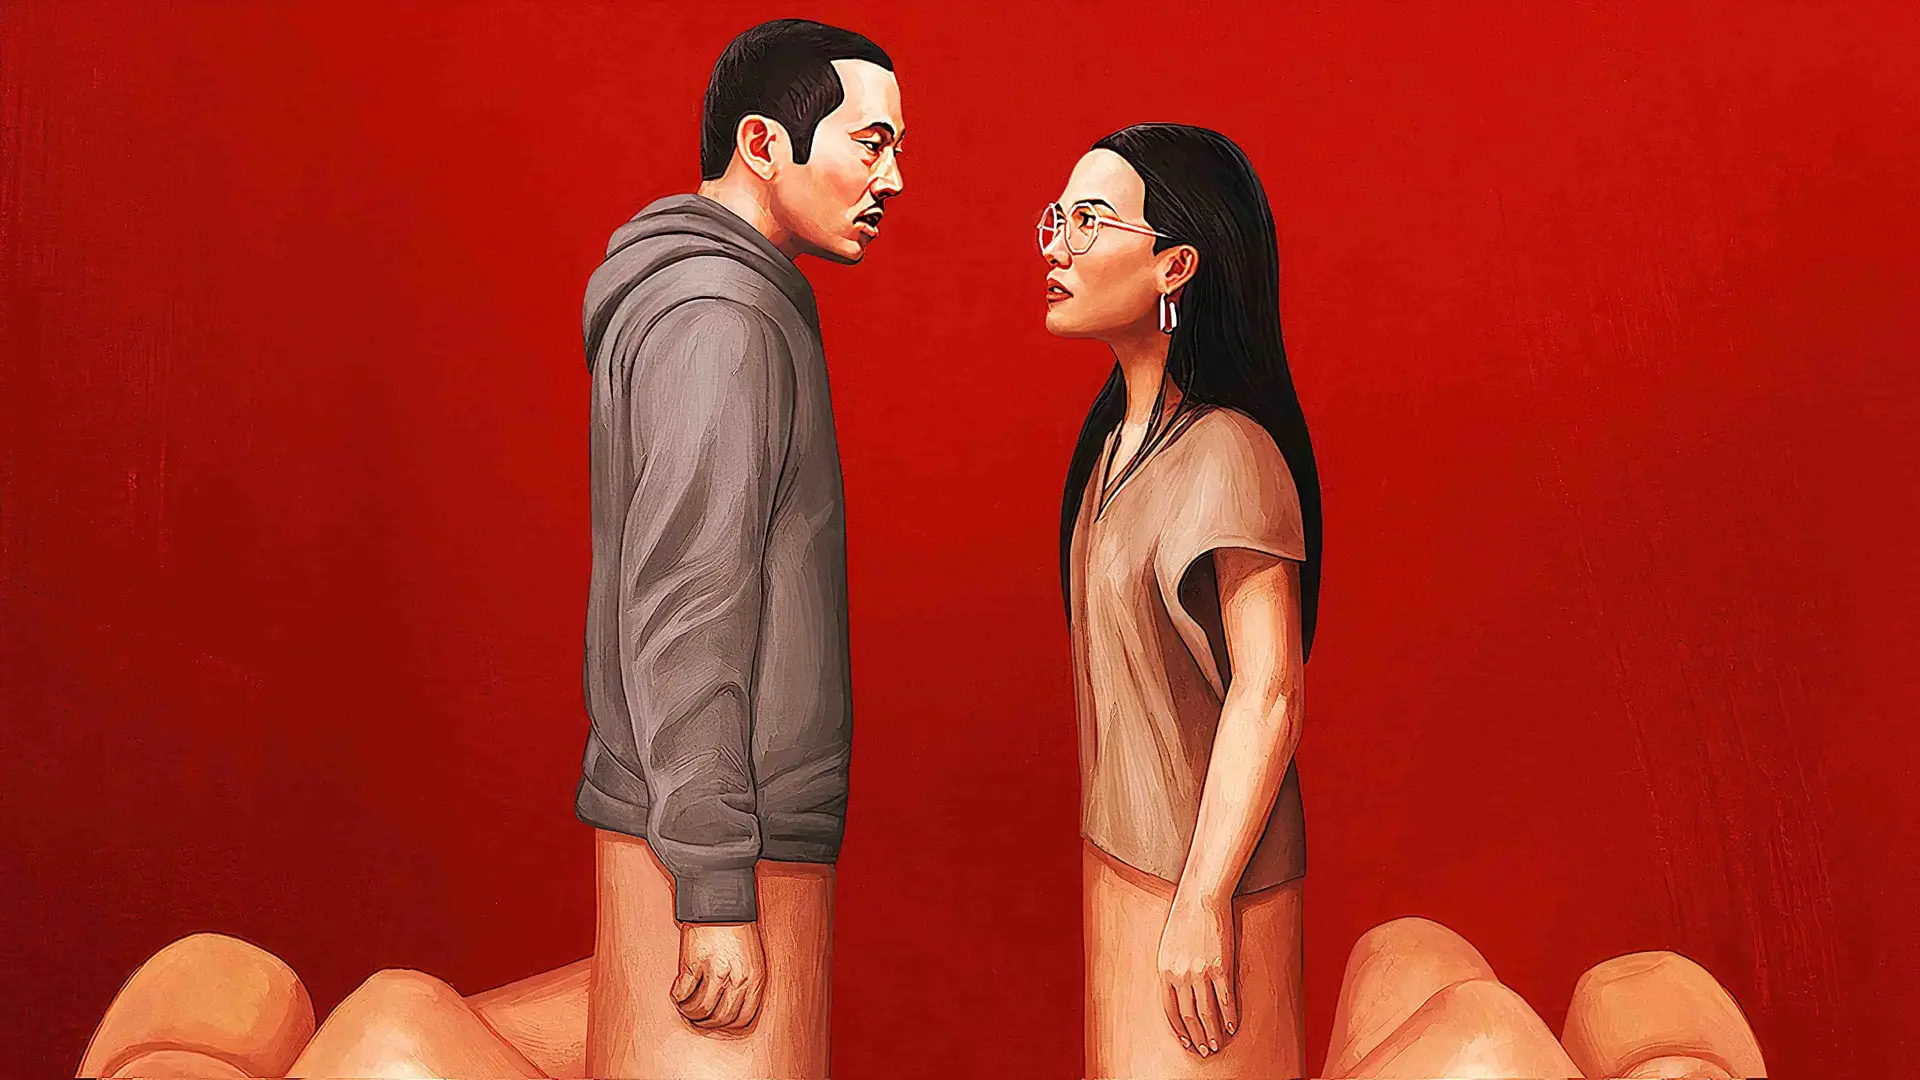 Imagen promocional de la serie Bronca que es una ilustración de una pareja mirando con gestos de enfadados